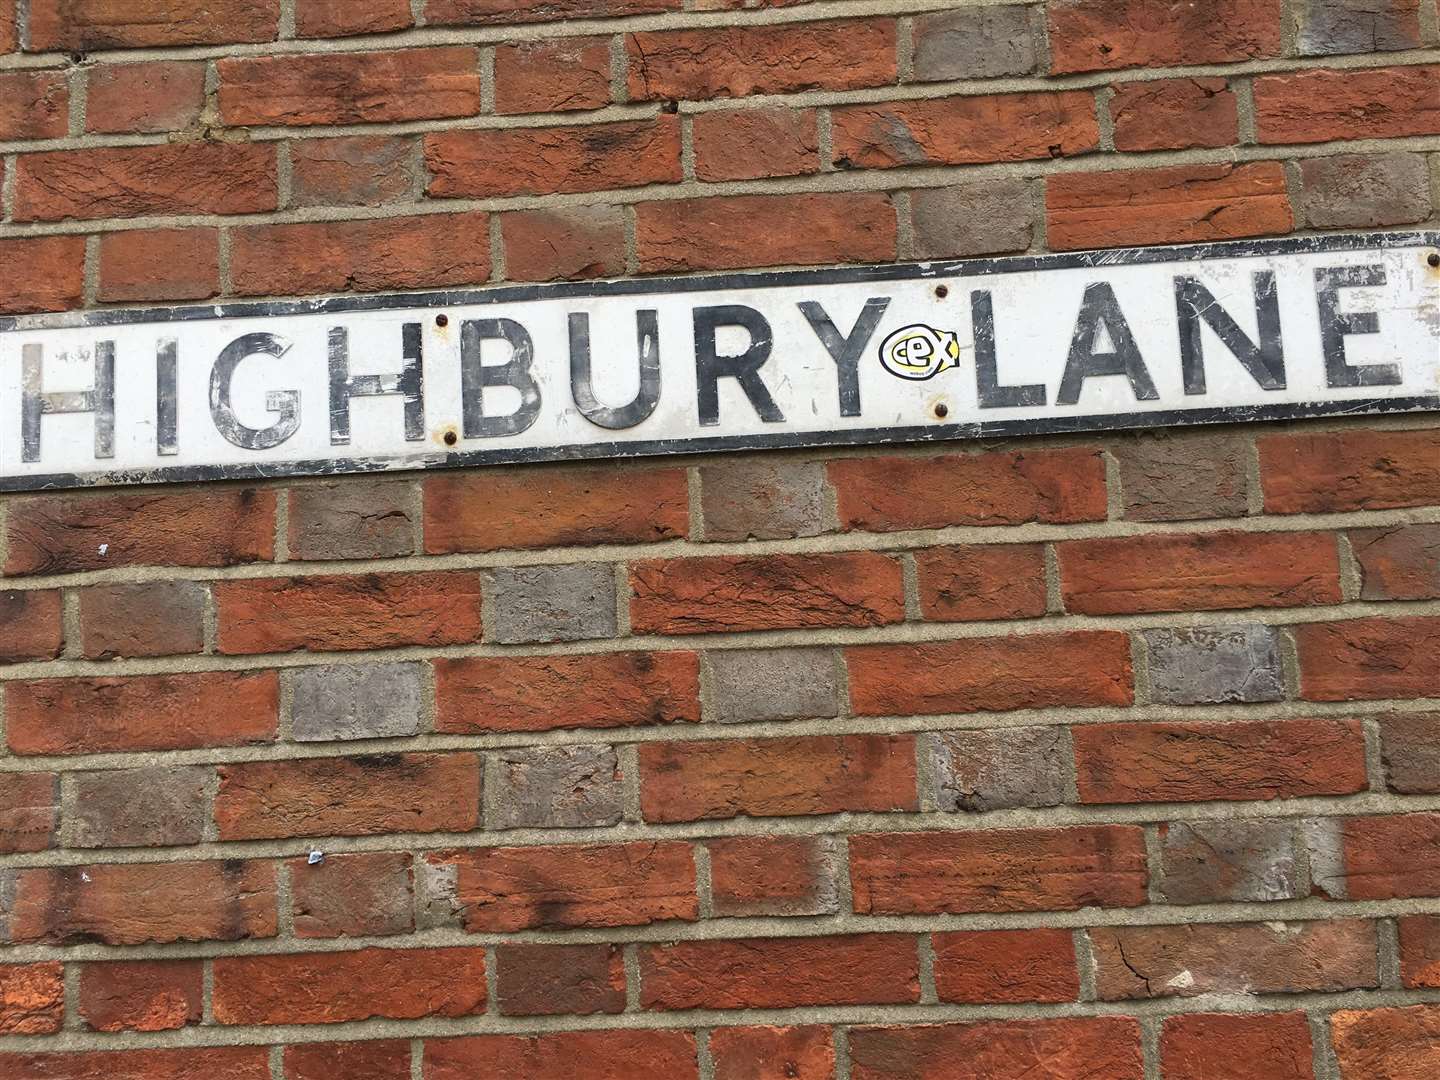 The alleged incident took place in Highbury Lane, Tenterden